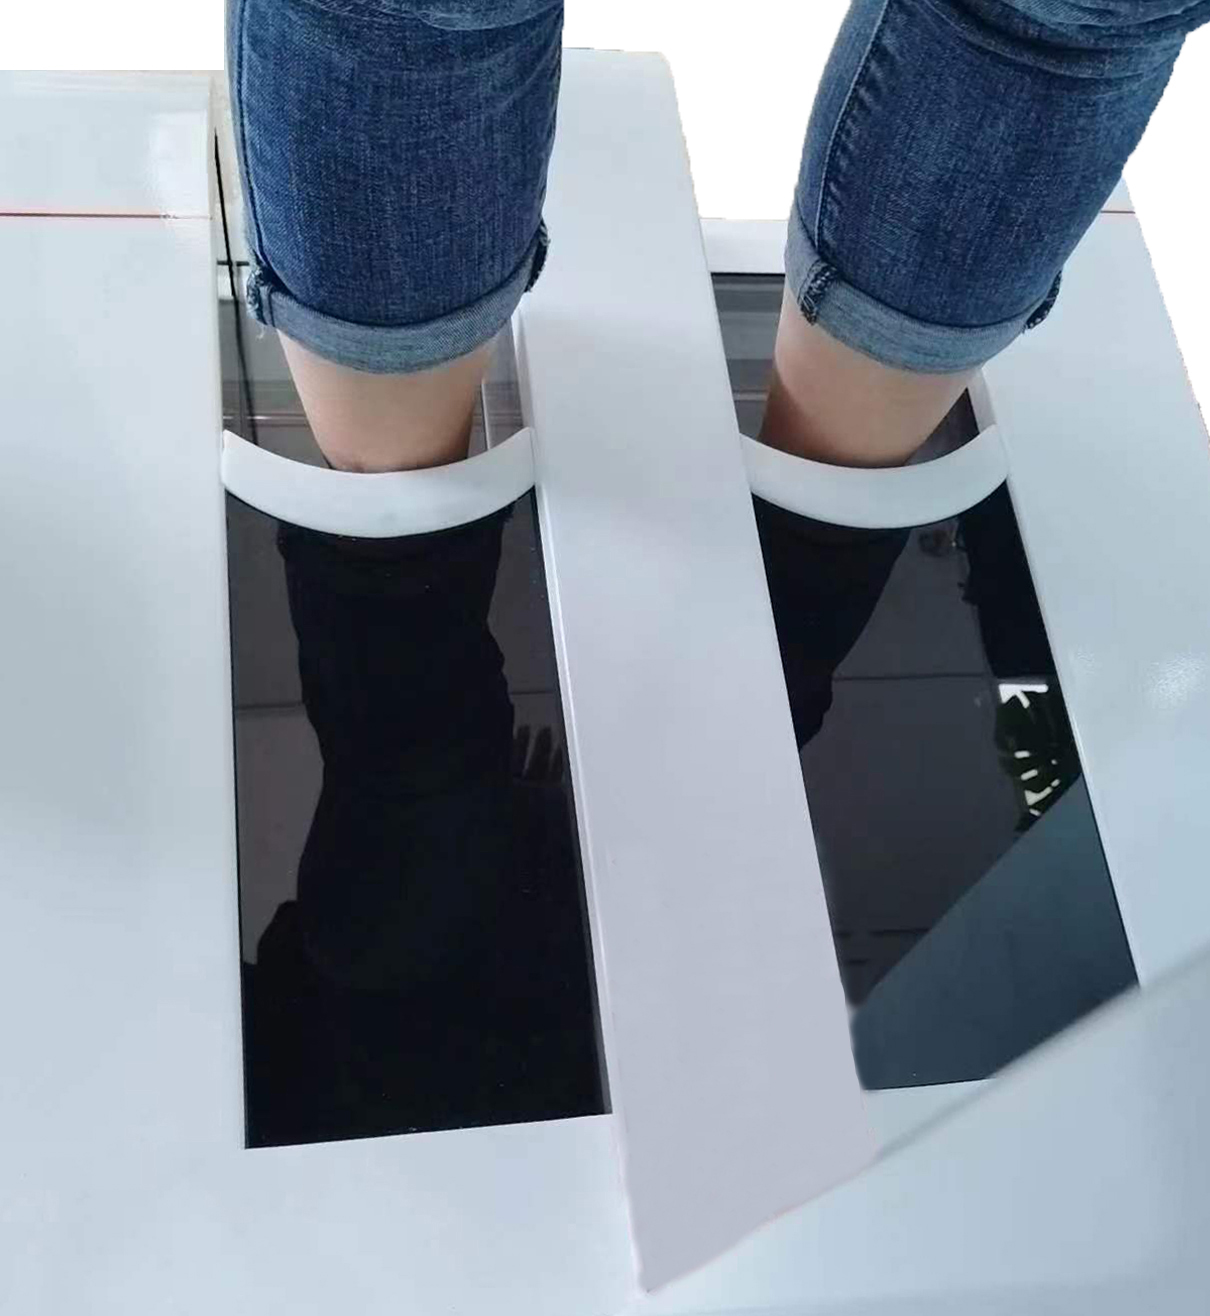 三维足部扫描仪可以在医疗领域中的多个方面进行应用，  以下介绍几种常见的应用：  1. 足部疾病诊断和治疗。三维足部扫描仪可以通过扫描足部并生成高精度的三维模型，帮助医生全面了解患者的足部状况，并进行